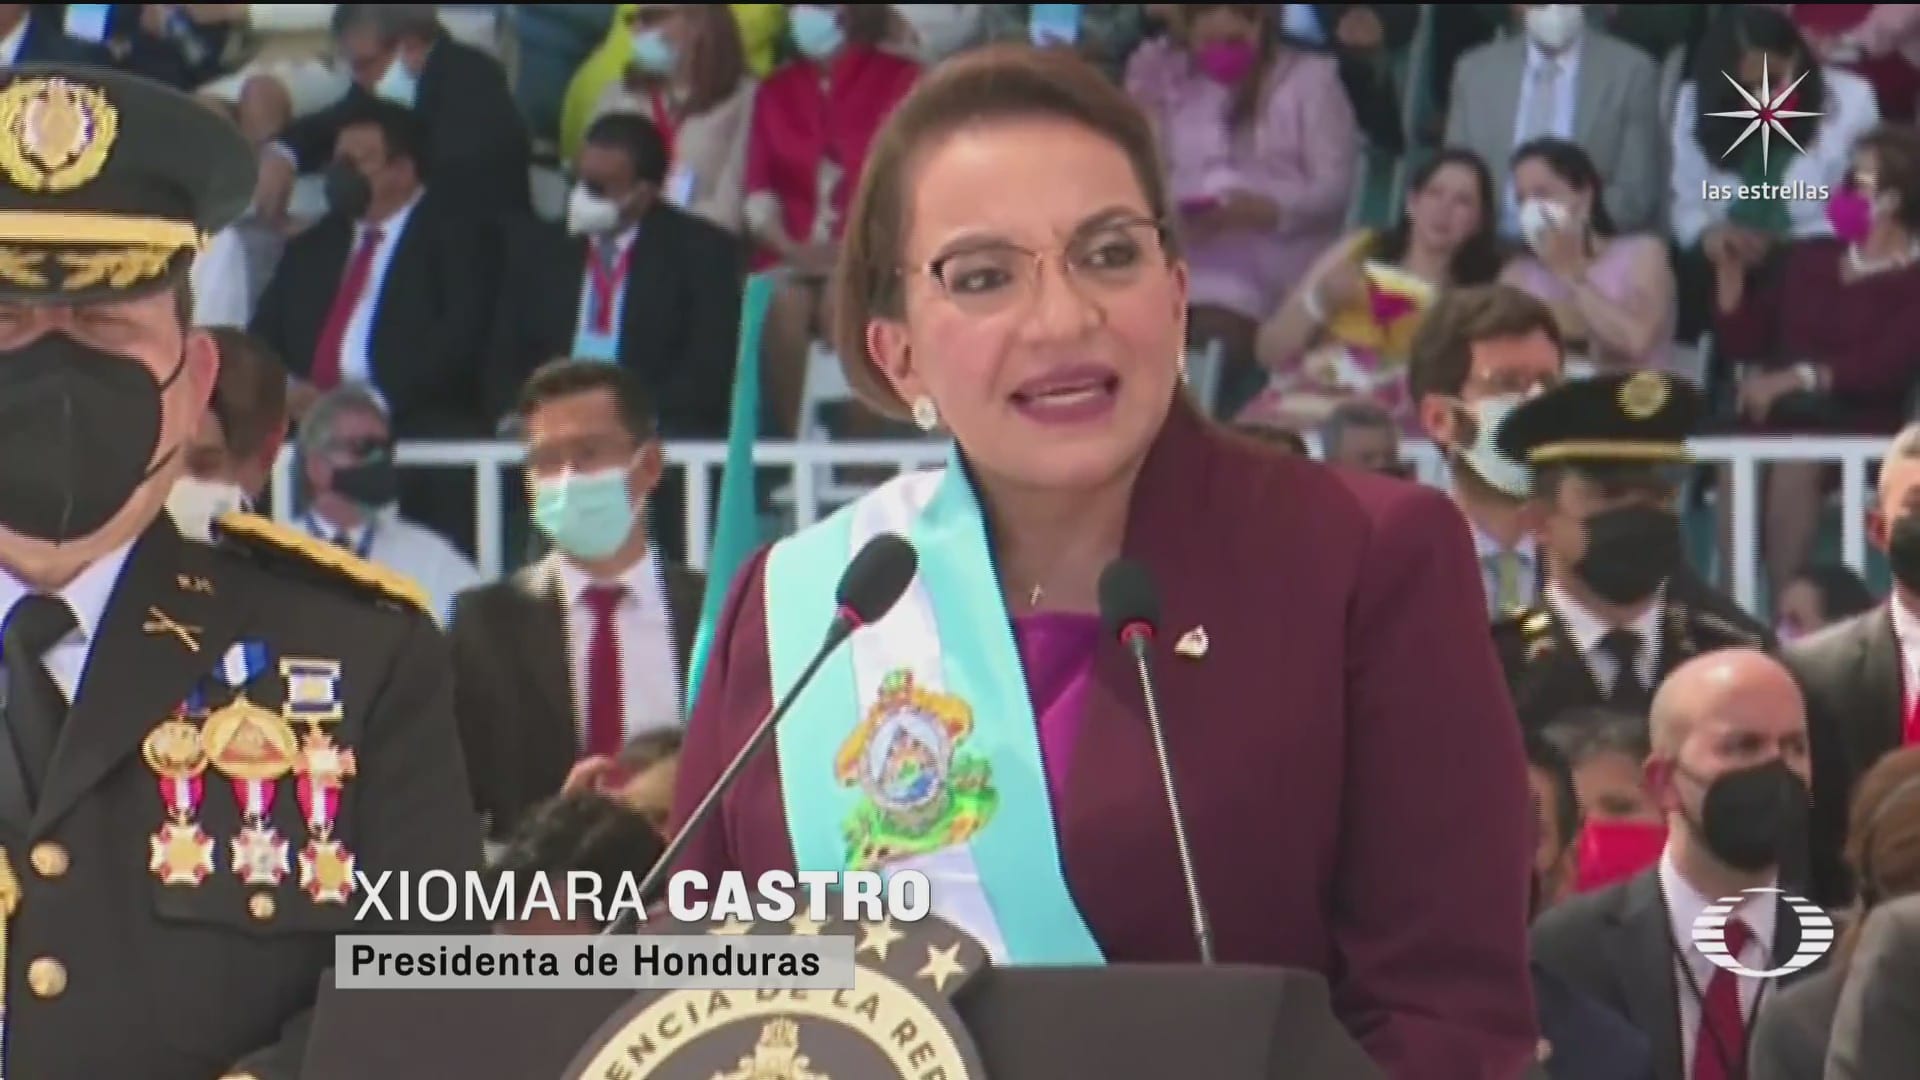 xiomara castro toma posesion como la primera presidenta de honduras